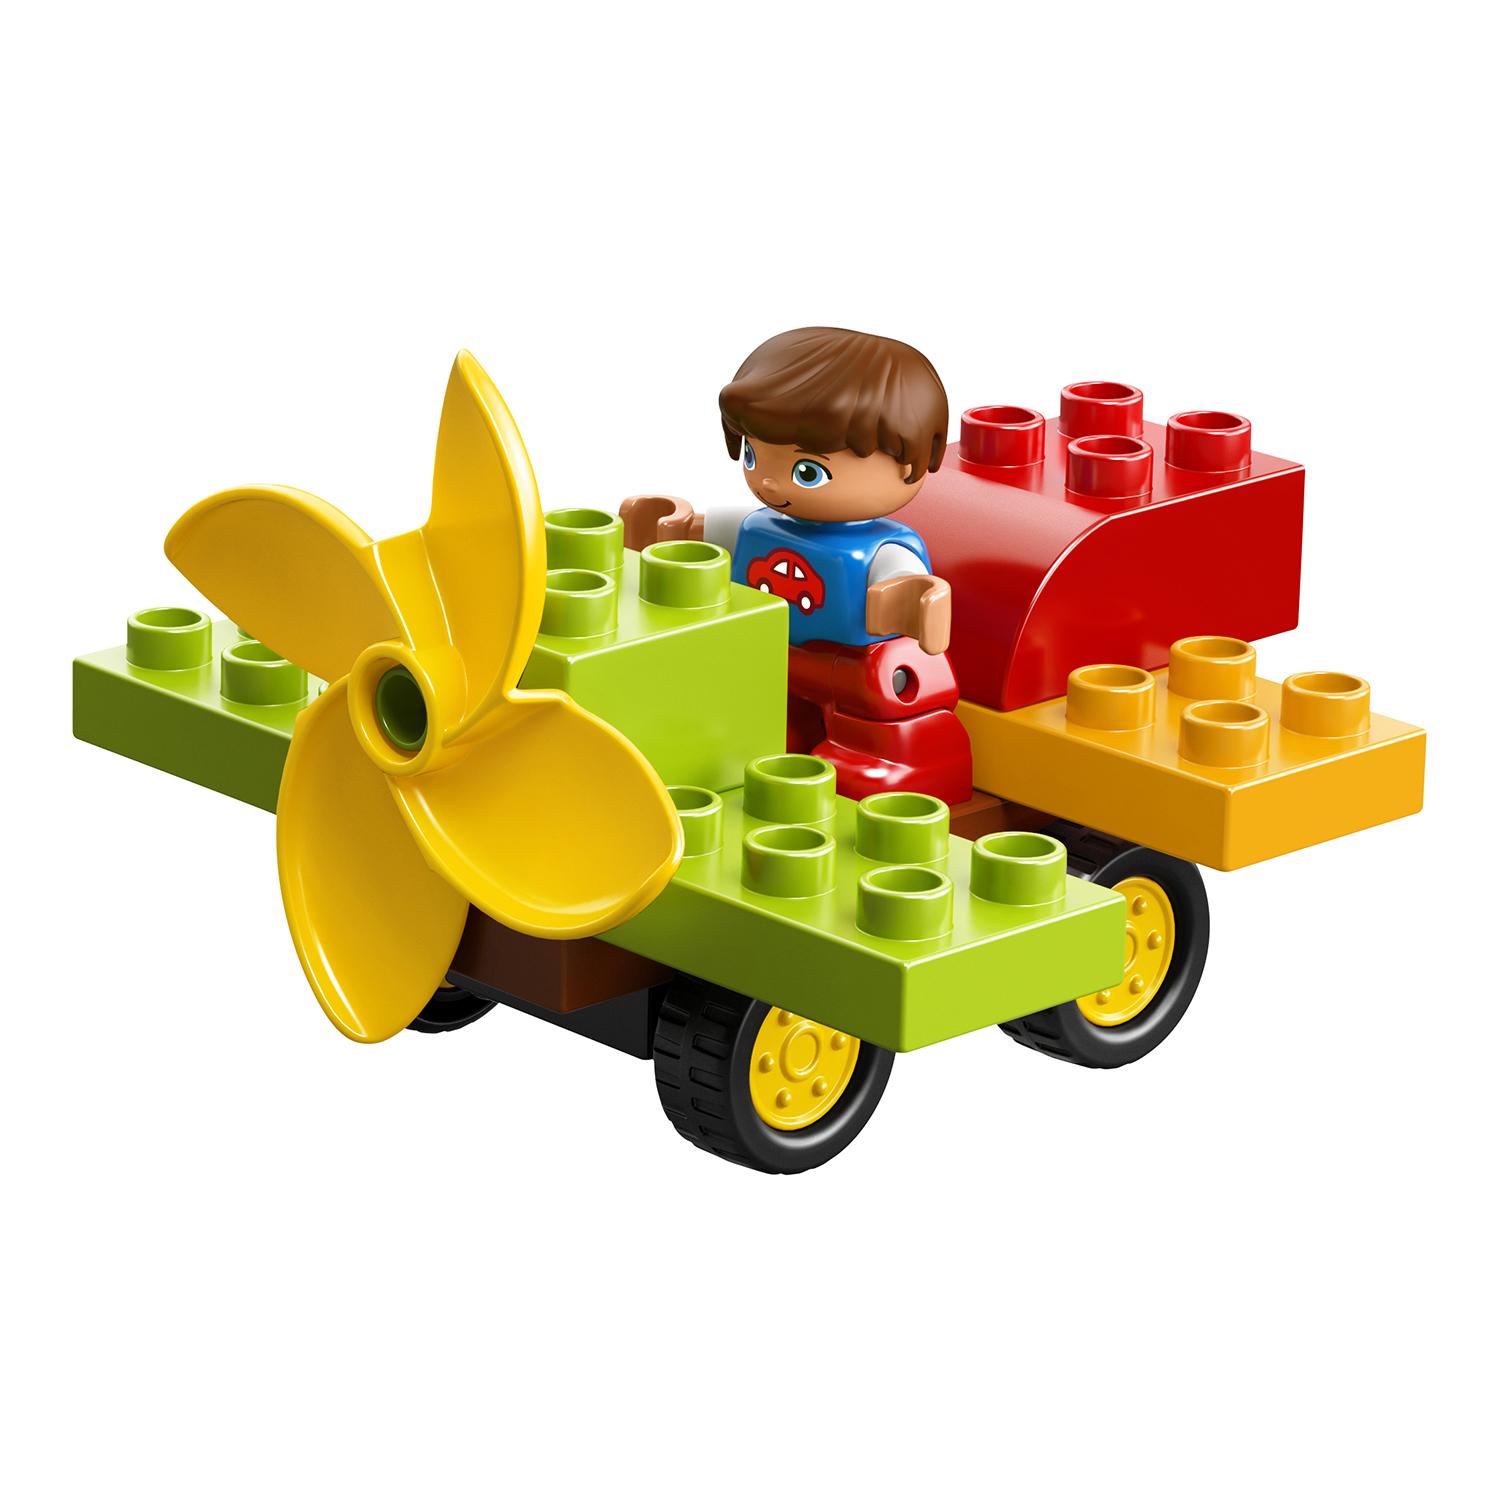 Lego Duplo 10864 Большая игровая площадка